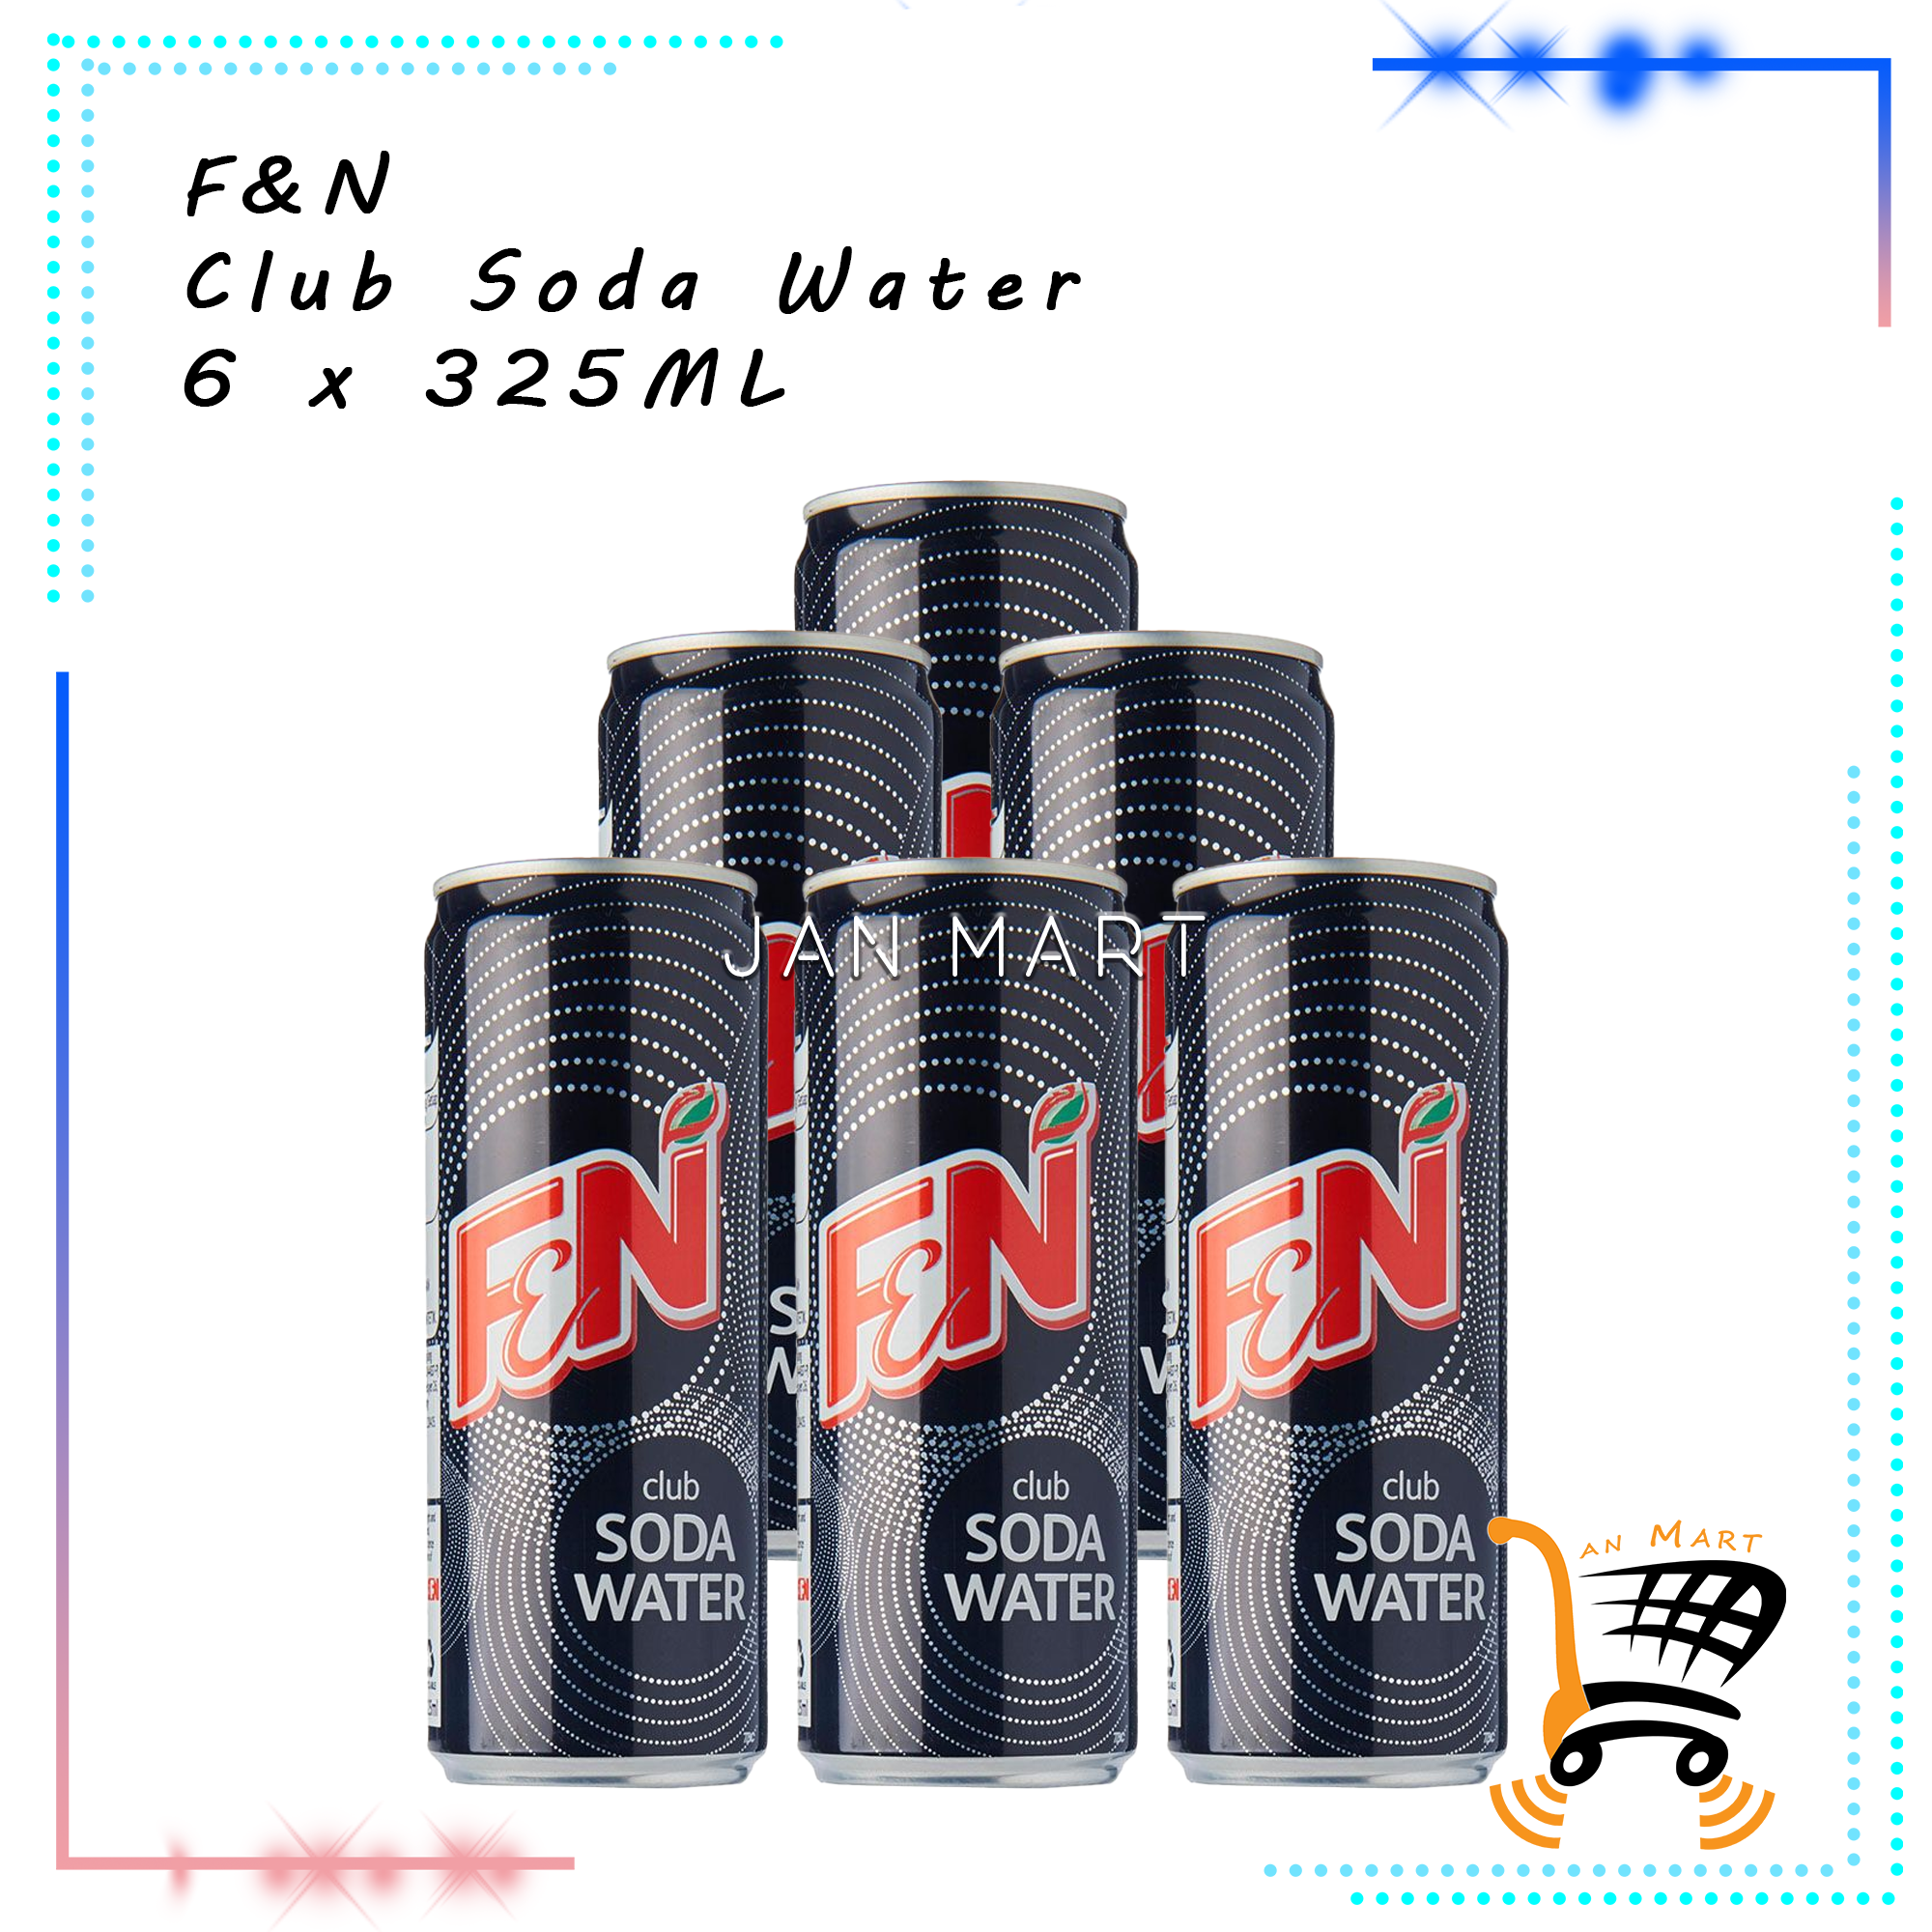 F&N Club Soda Water 6 x 325ML